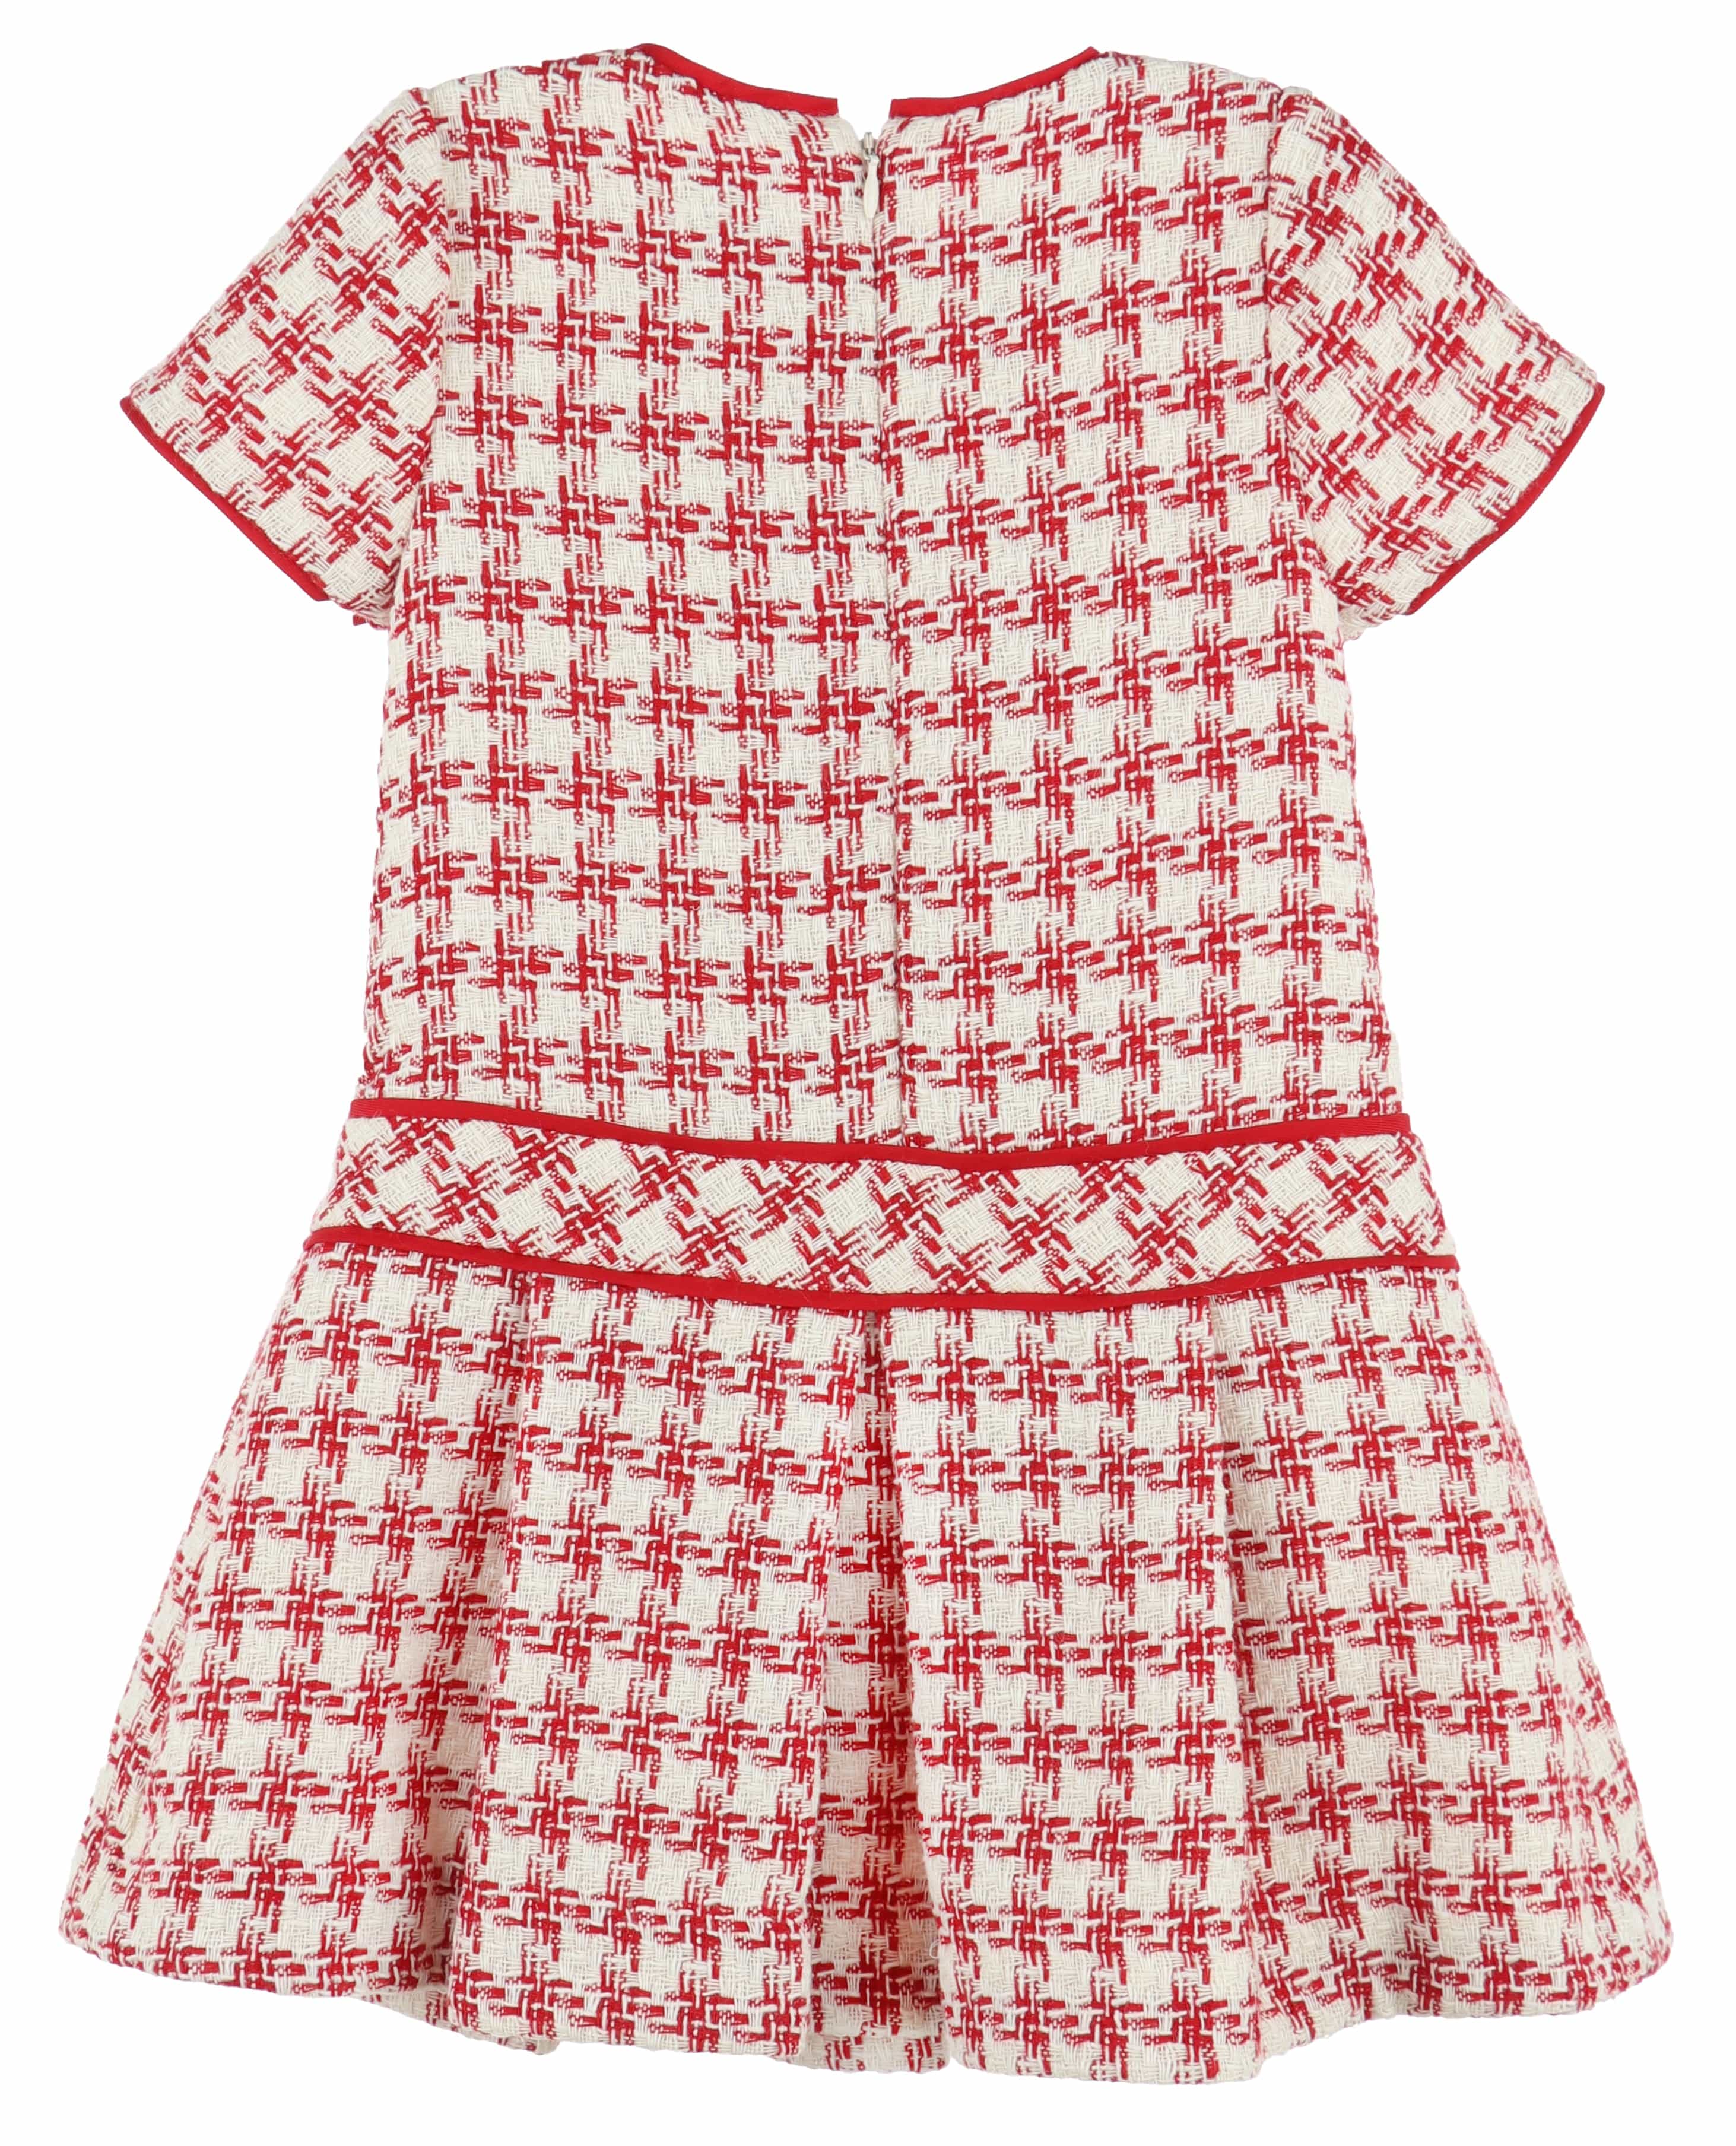 C&A - Casero & Associates Casero & Associates Tweed Drop Waist Dress - Little Miss Muffin Children & Home